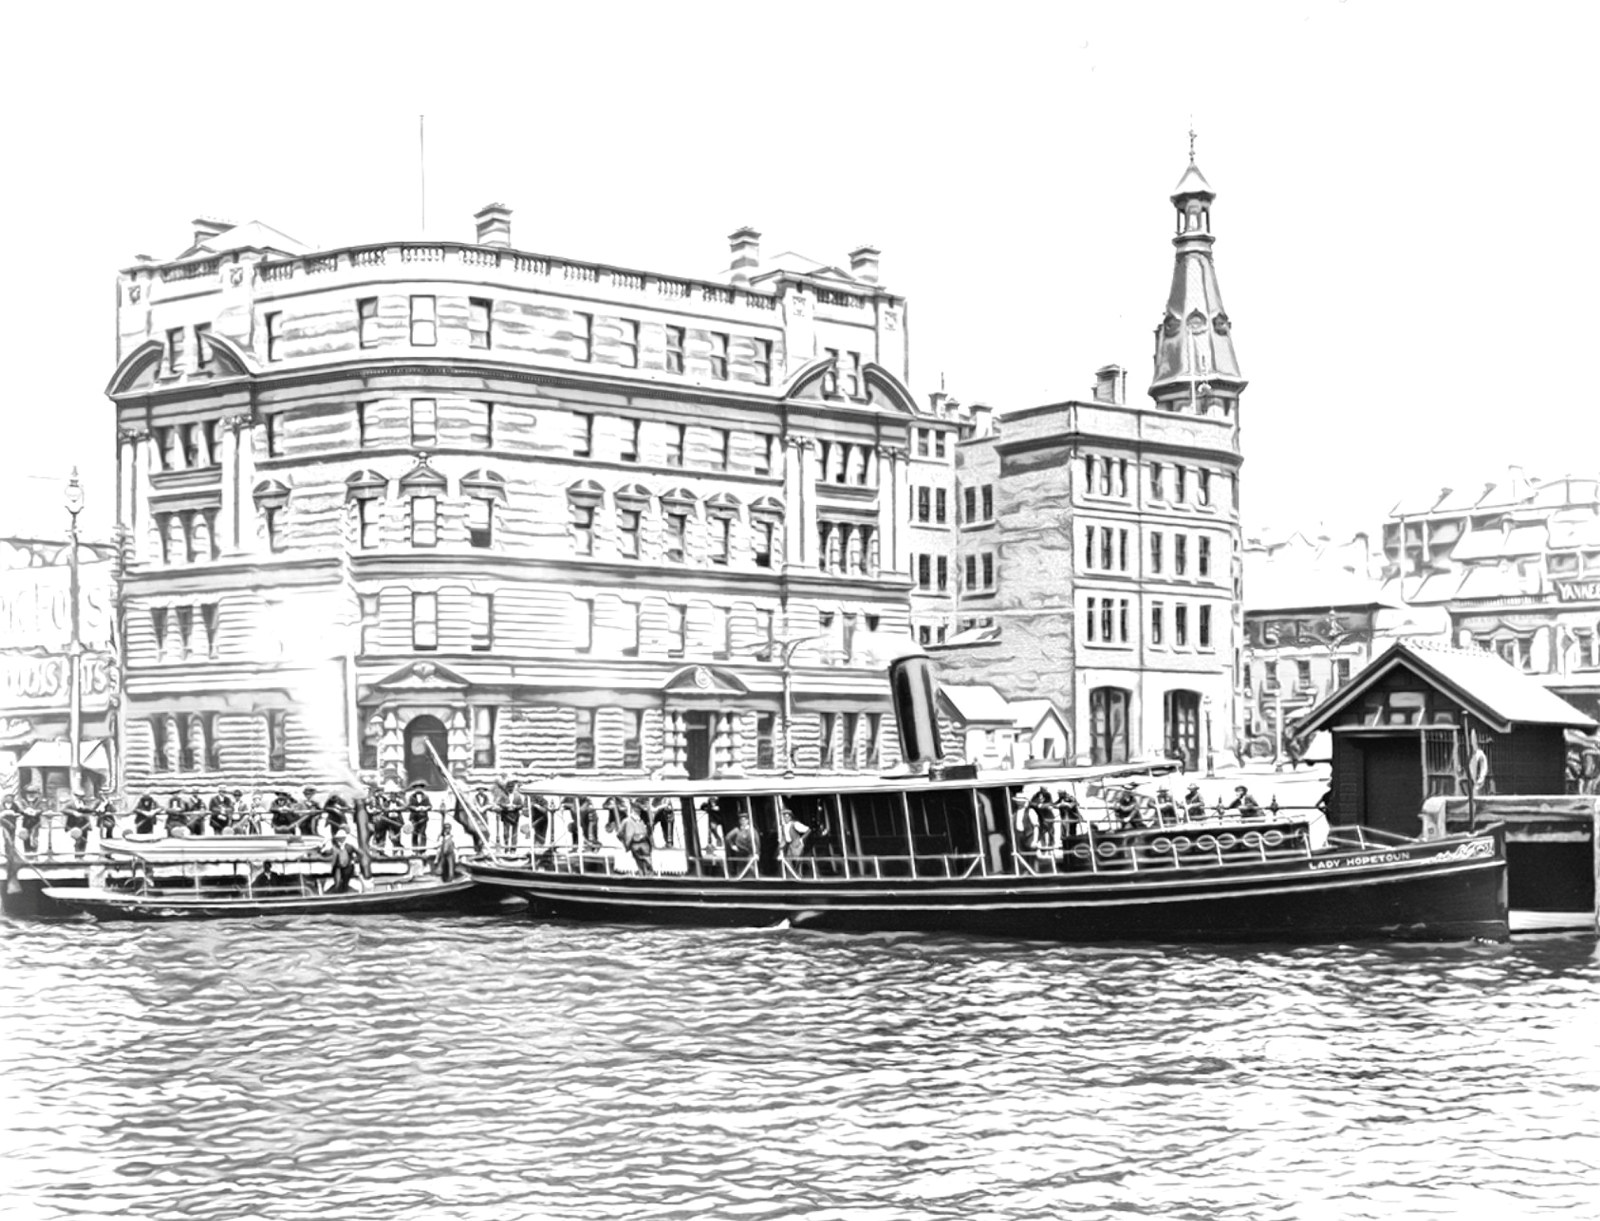 Lady Hopetoun docked at Circular Quay